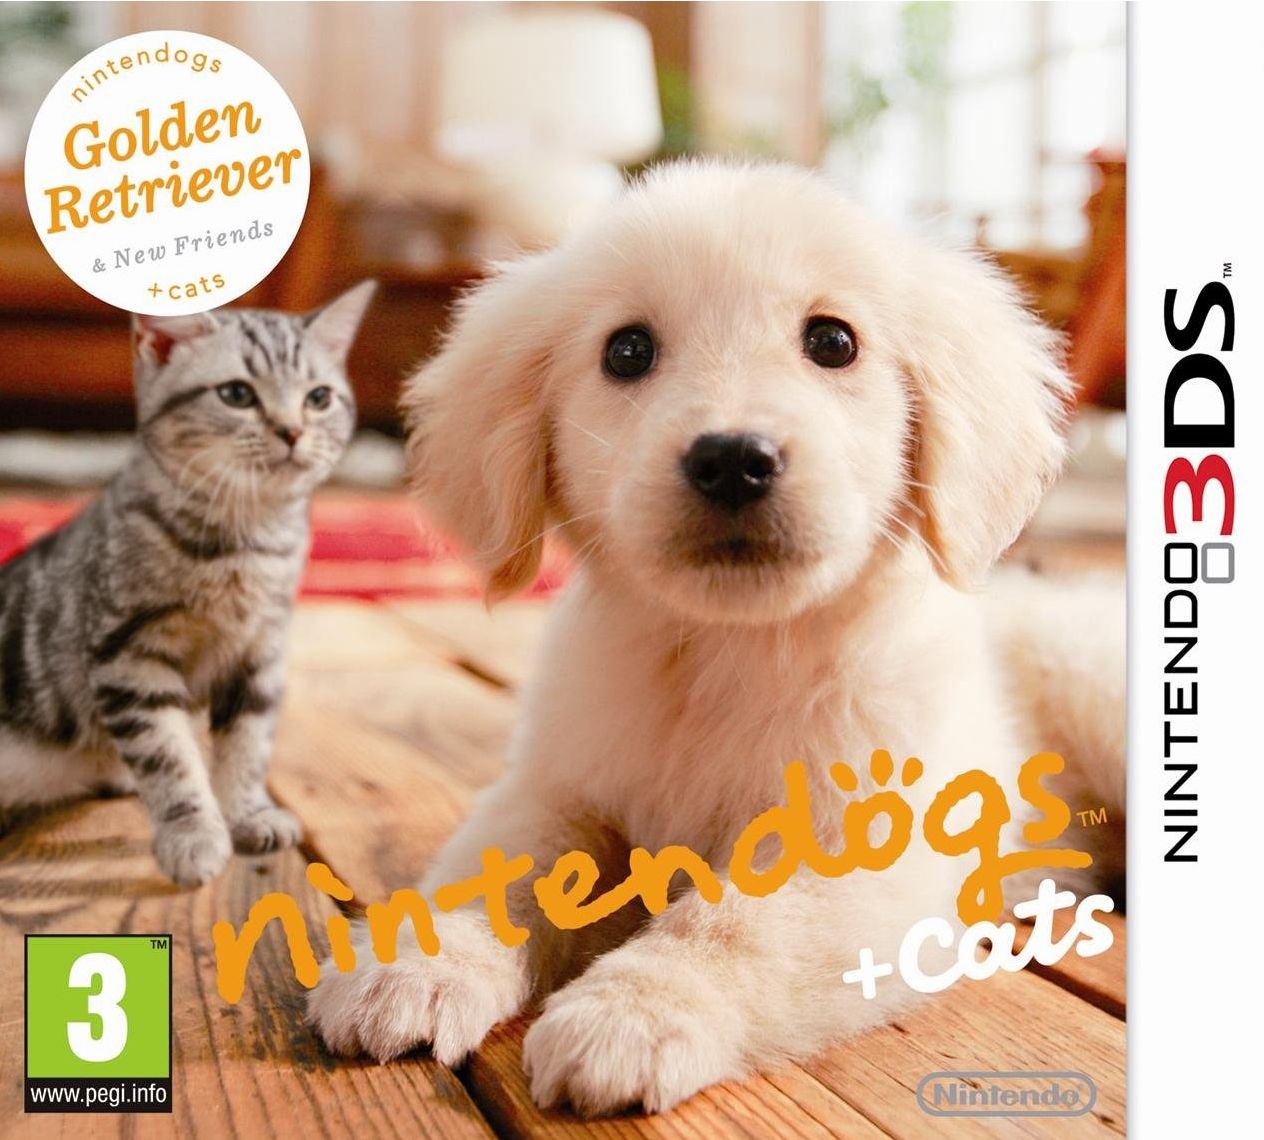 nintendogs + cats Golden Retriever & ses nouveaux amis